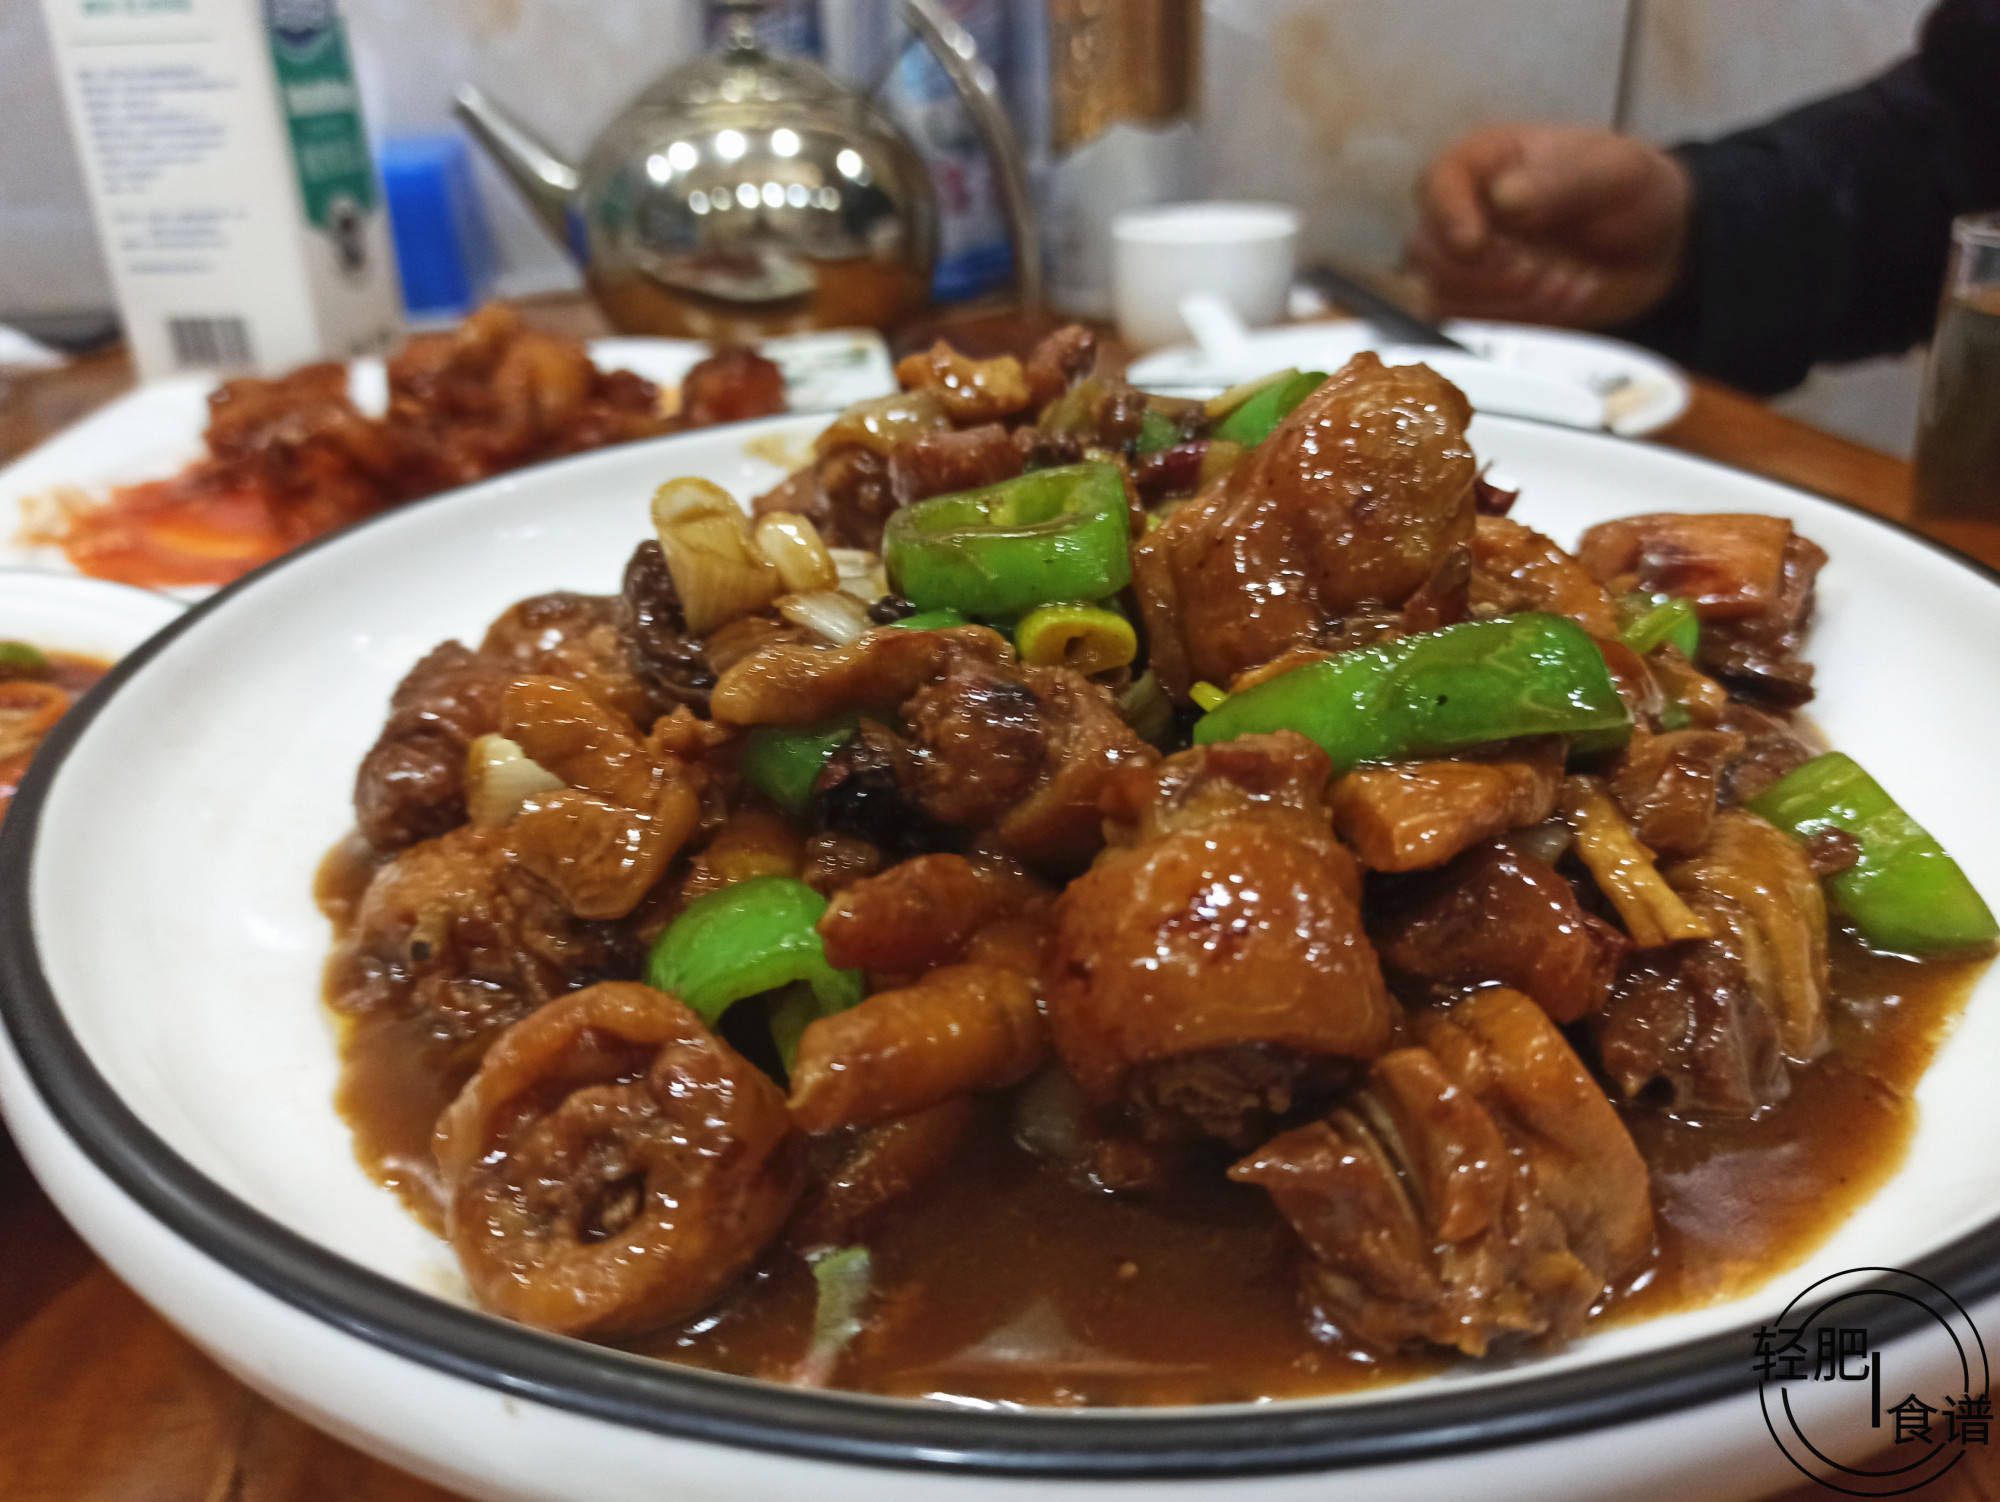 山东菜馆的6道菜,有鸡有鱼150元真不贵,但越吃越觉得不值